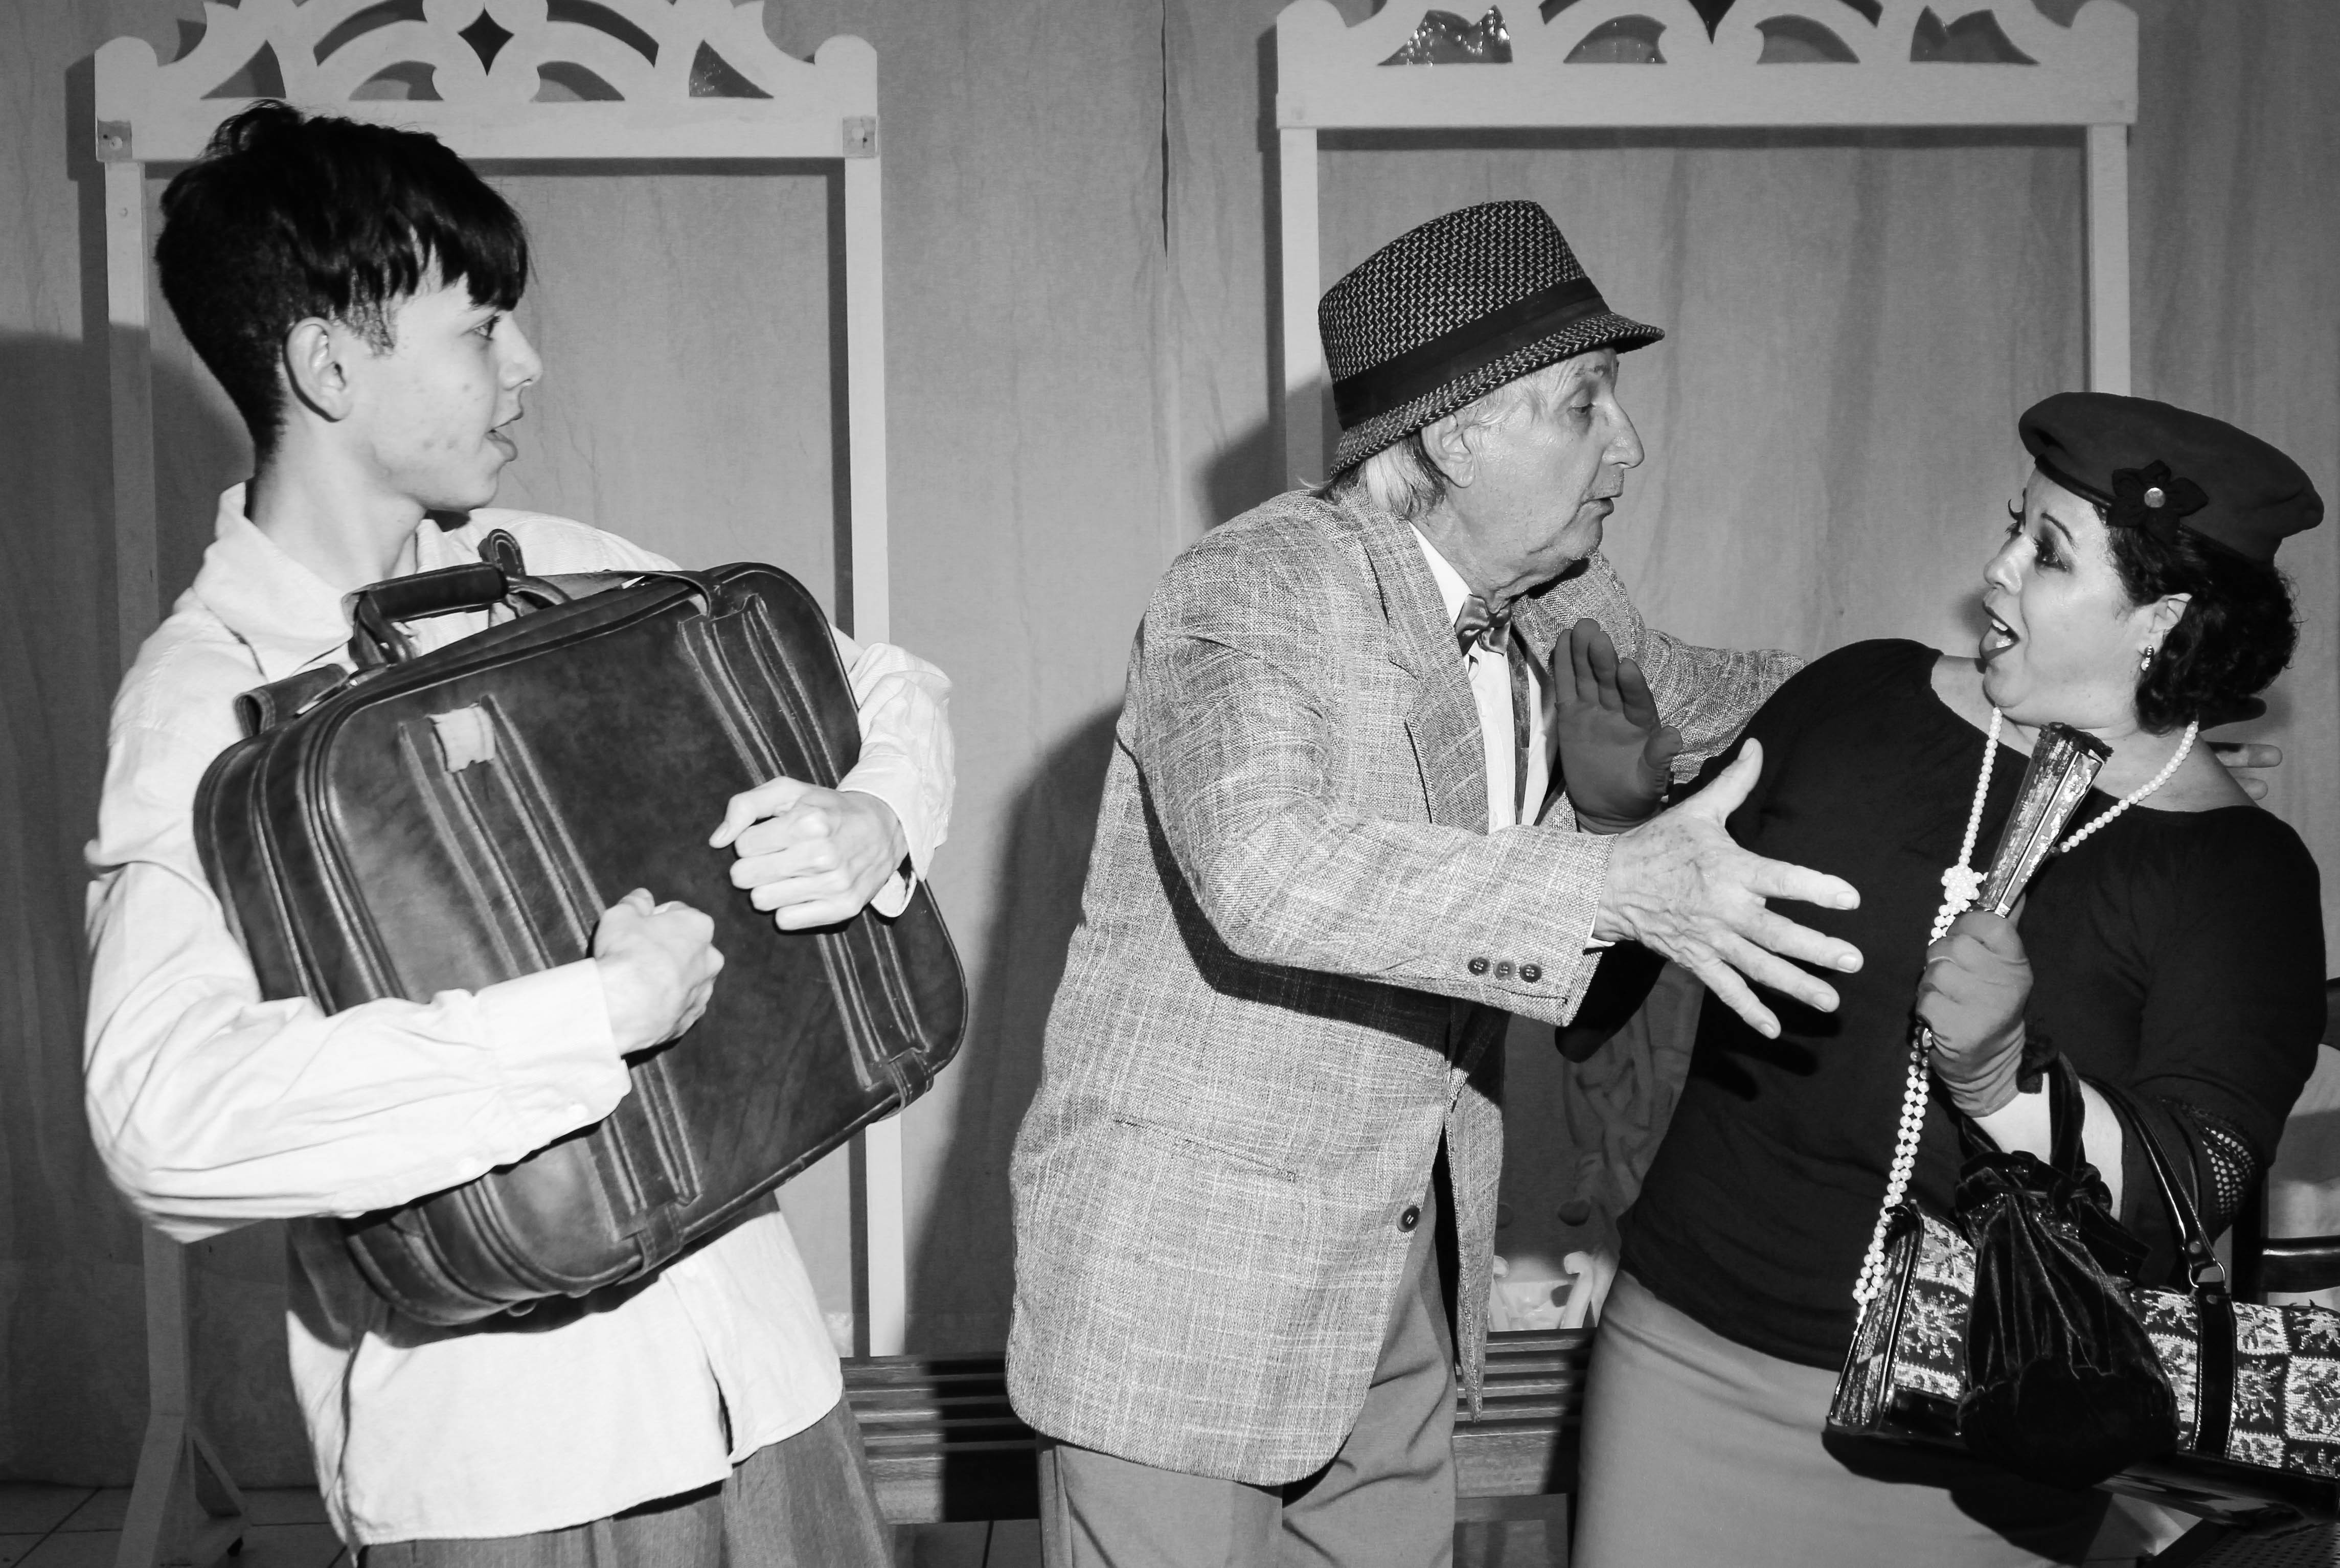 Atores encenam espetáculo Os Coriscos: um jovem segura uma mala ao peito, enquanto um velho de chapéu e roupas antigas se exalta com um jovem senhora que o repele